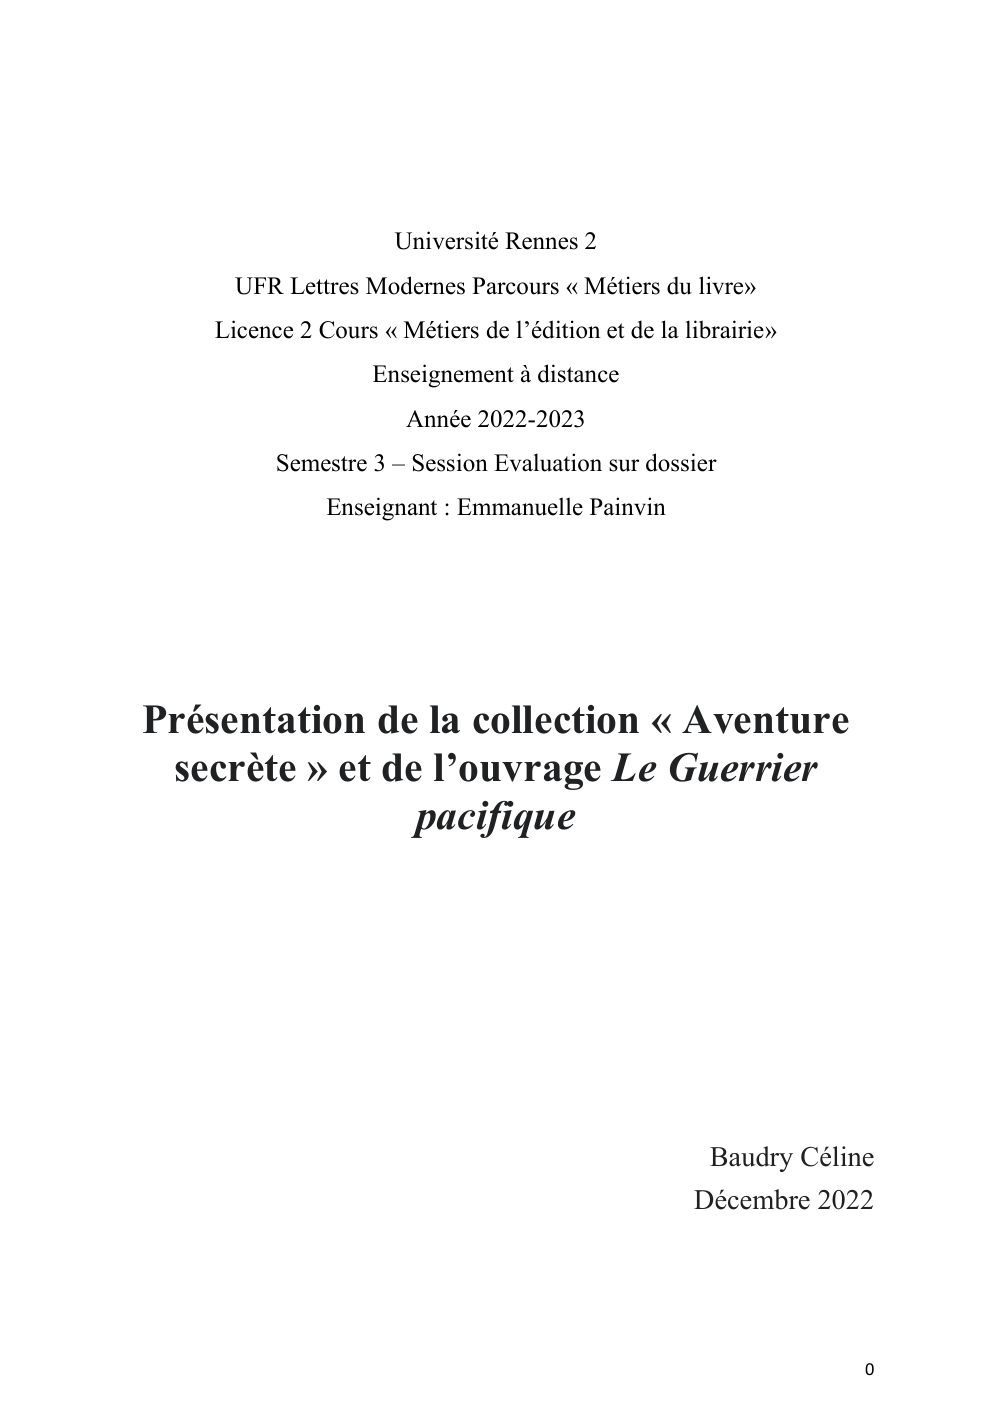 Prévisualisation du document Présentation de la collection « Aventure secrète » et de l’ouvrage Le Guerrier pacifique de Dan Millman